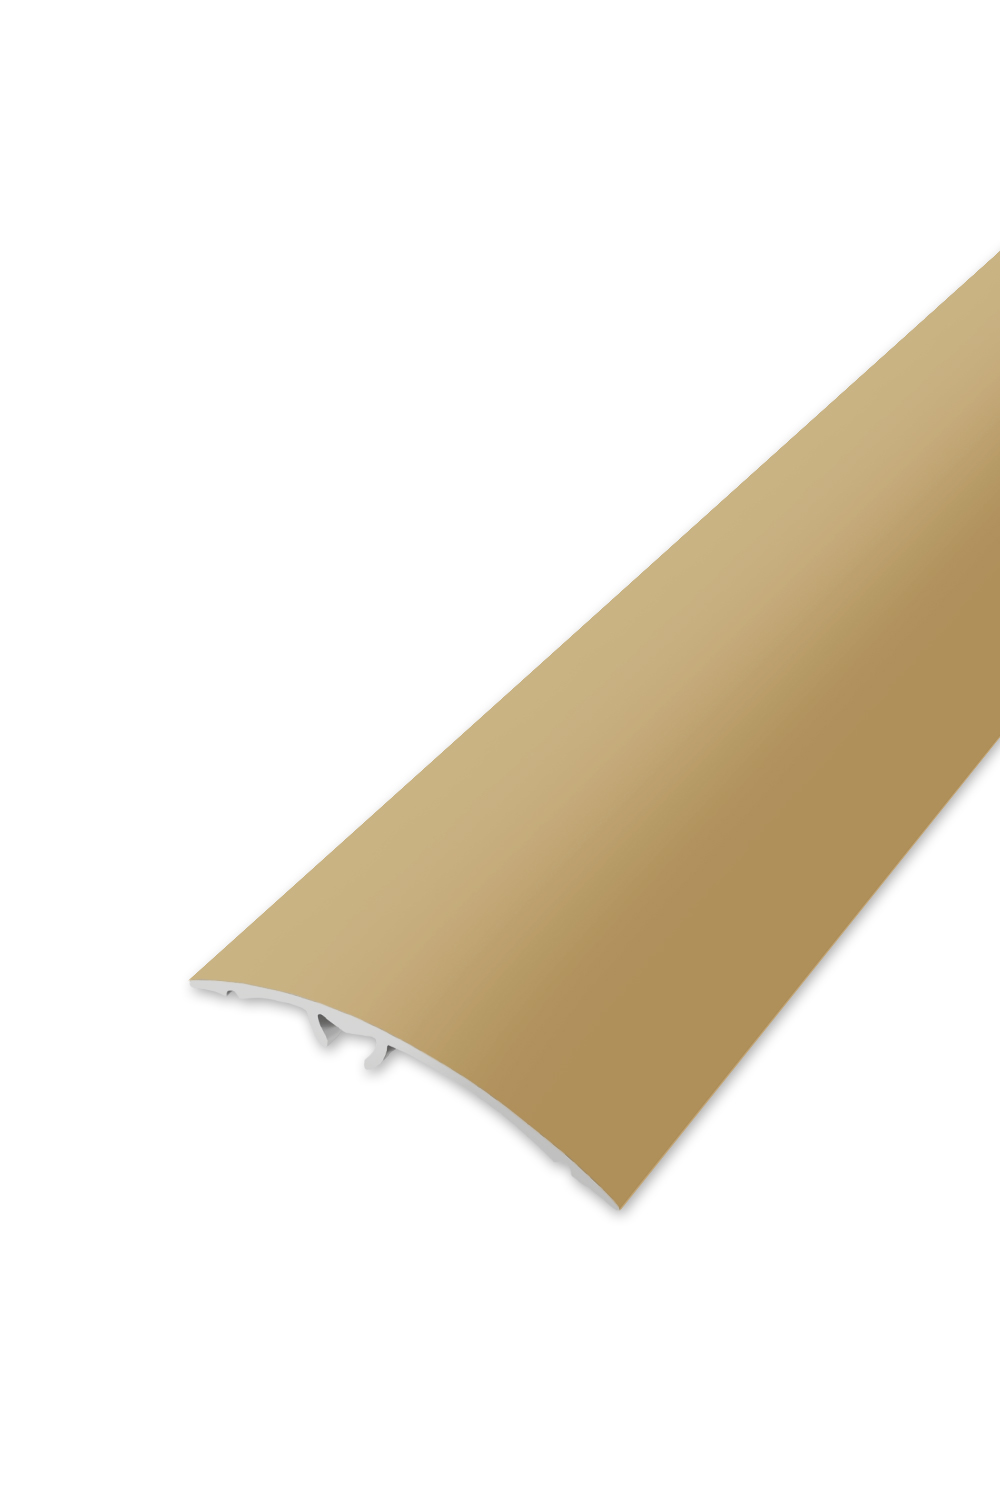 Přechodová lišta WELL 50 - Zlatá 90 cm